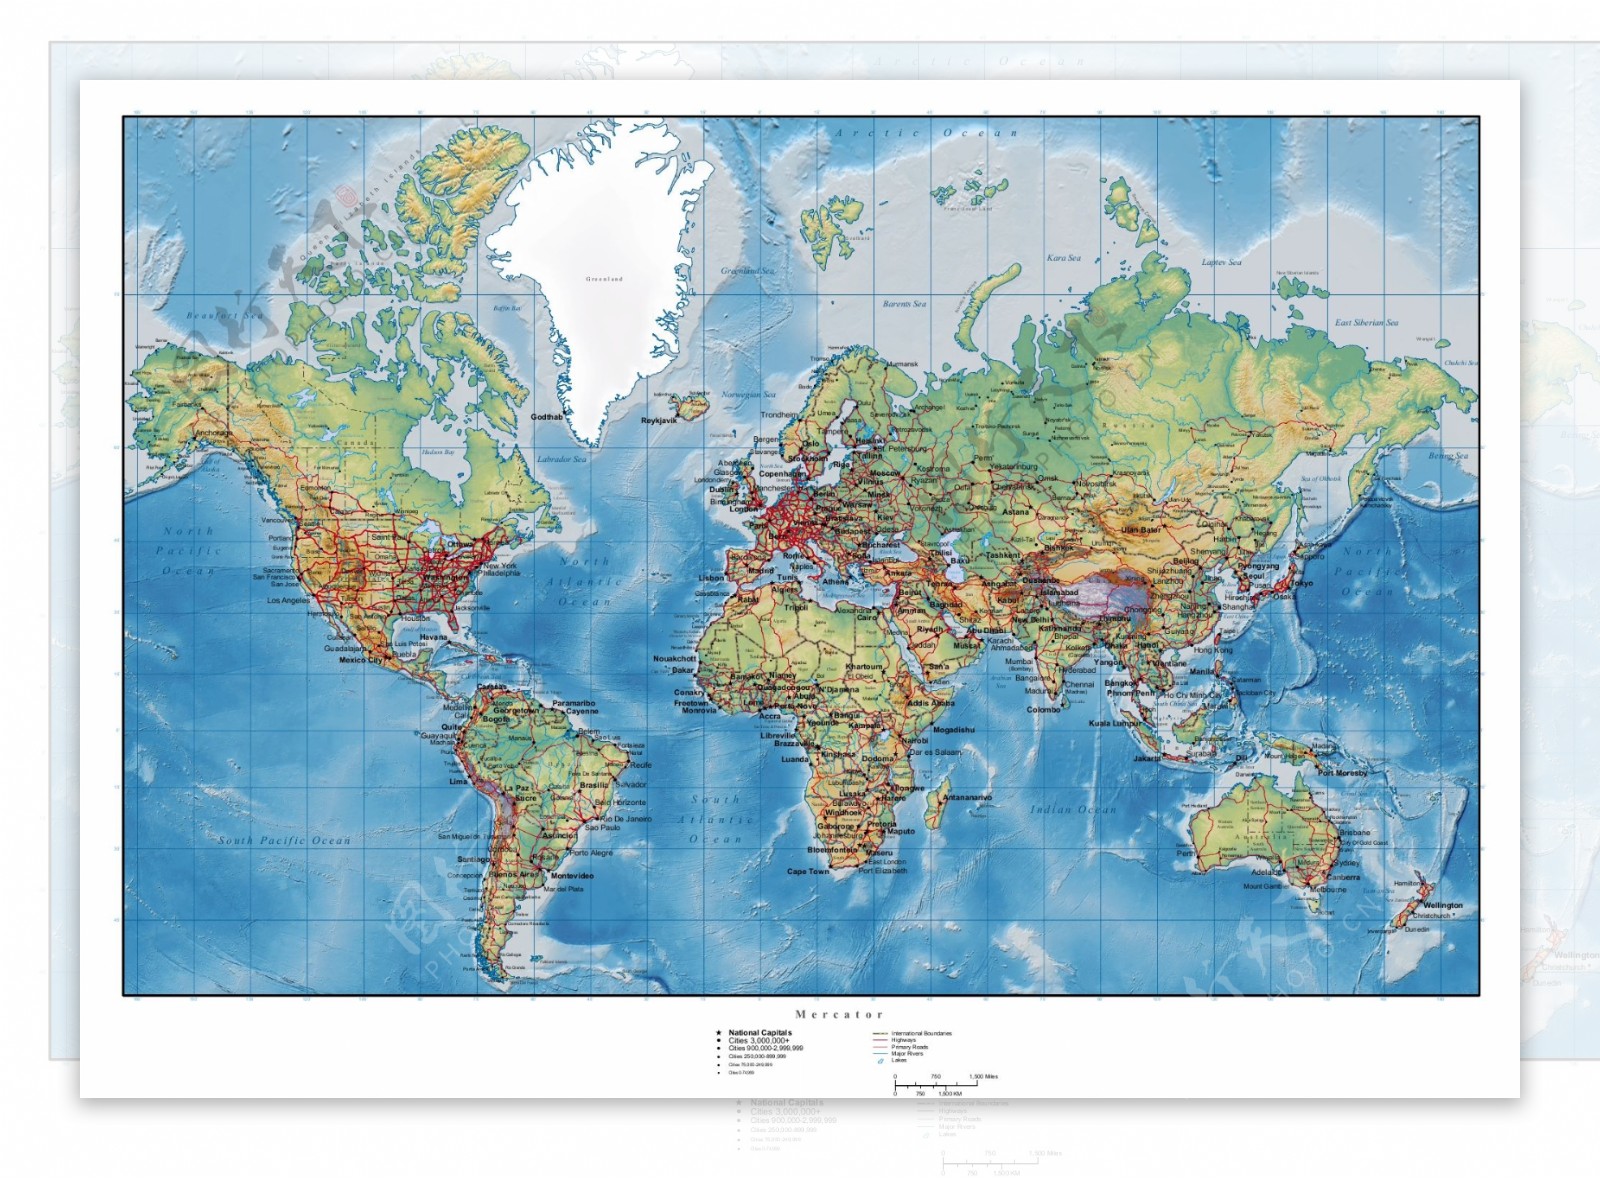 丘陵地形矢量图的世界地图